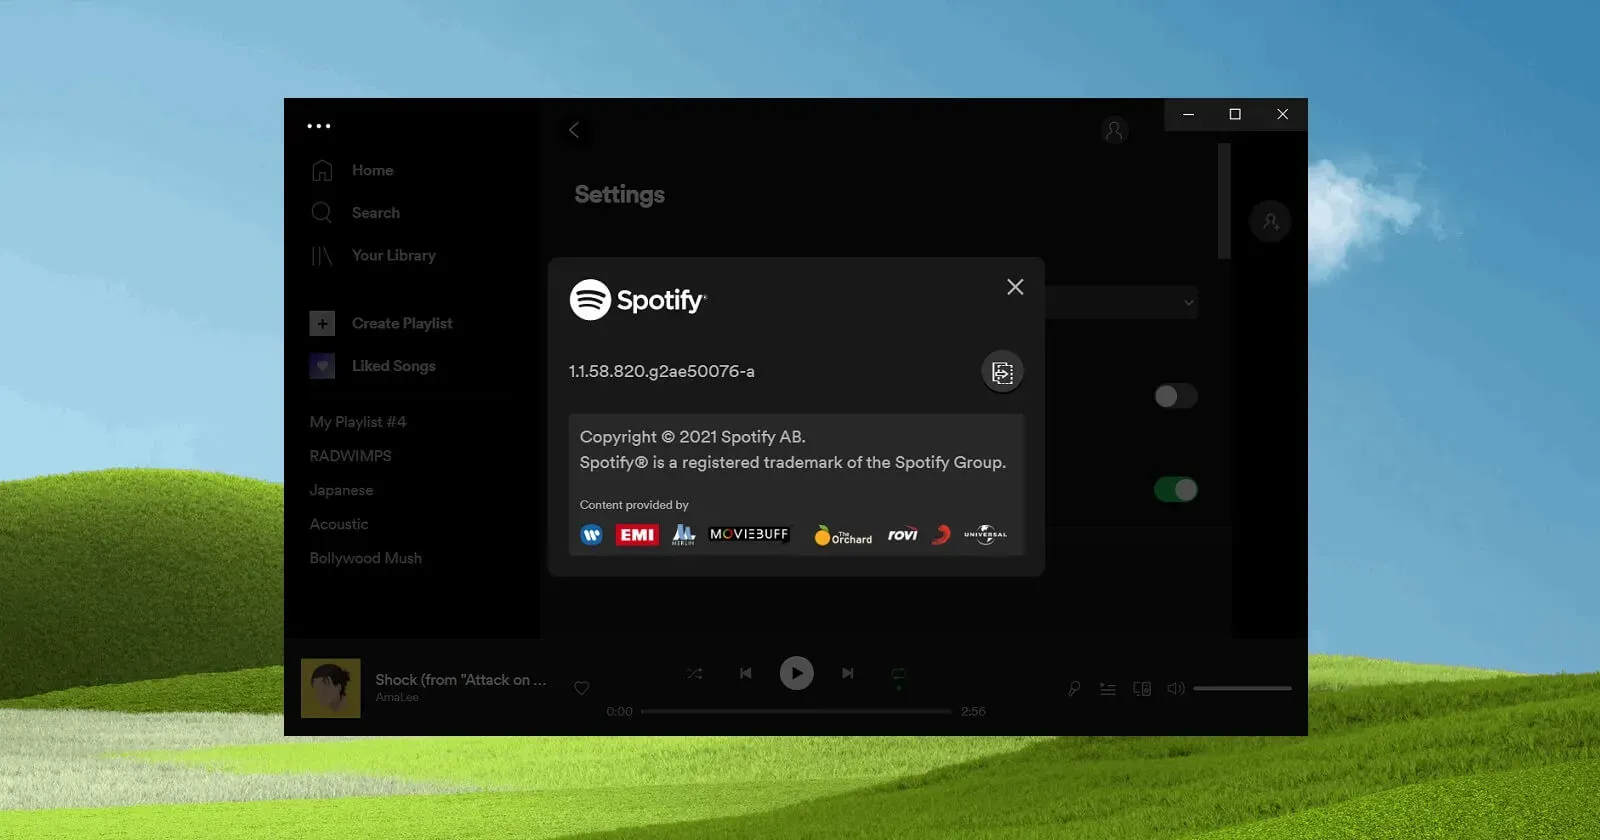 L’app Spotify viene installata automaticamente su Windows 10 e Windows 11.